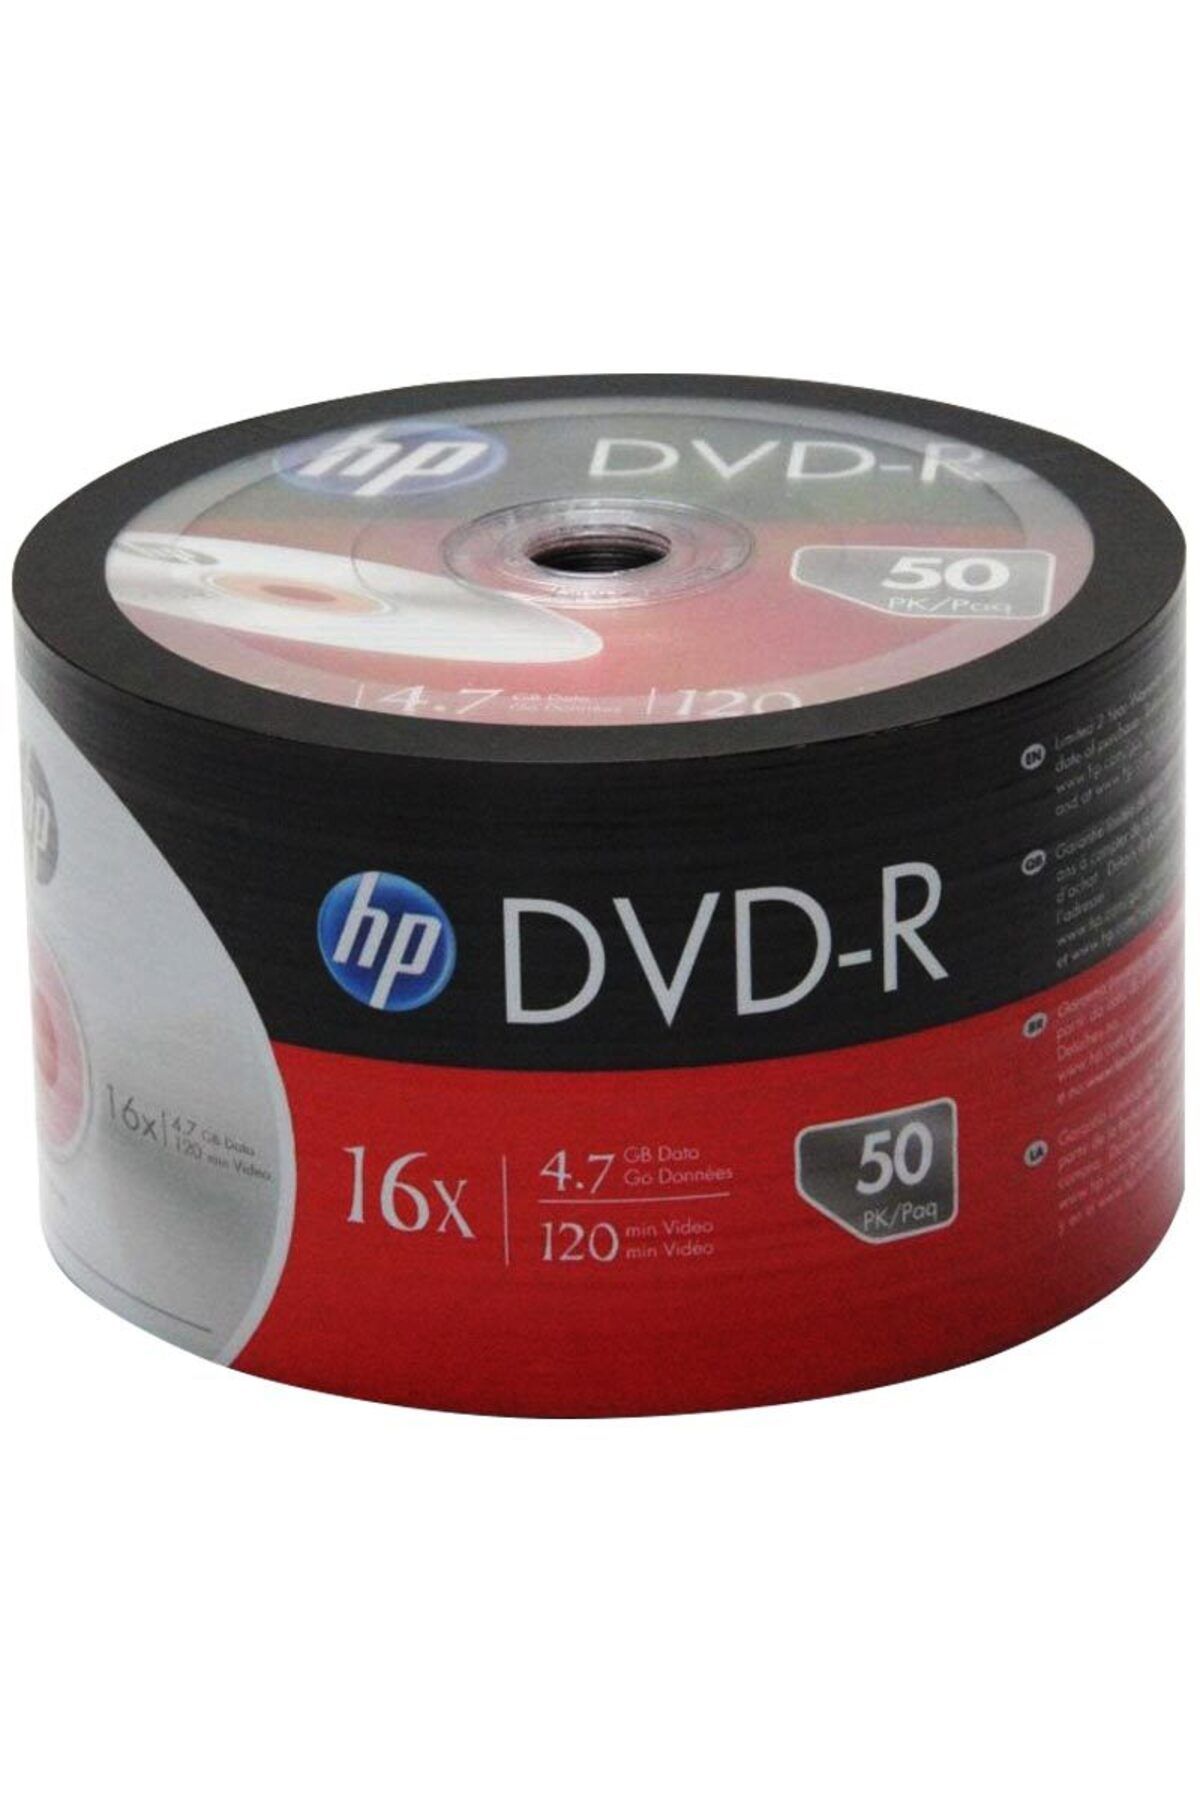 SAFE GROUP HP DME00070-3 DVD-R 4.7 GB 120 MİN 16X 50Lİ PAKET FİYAT